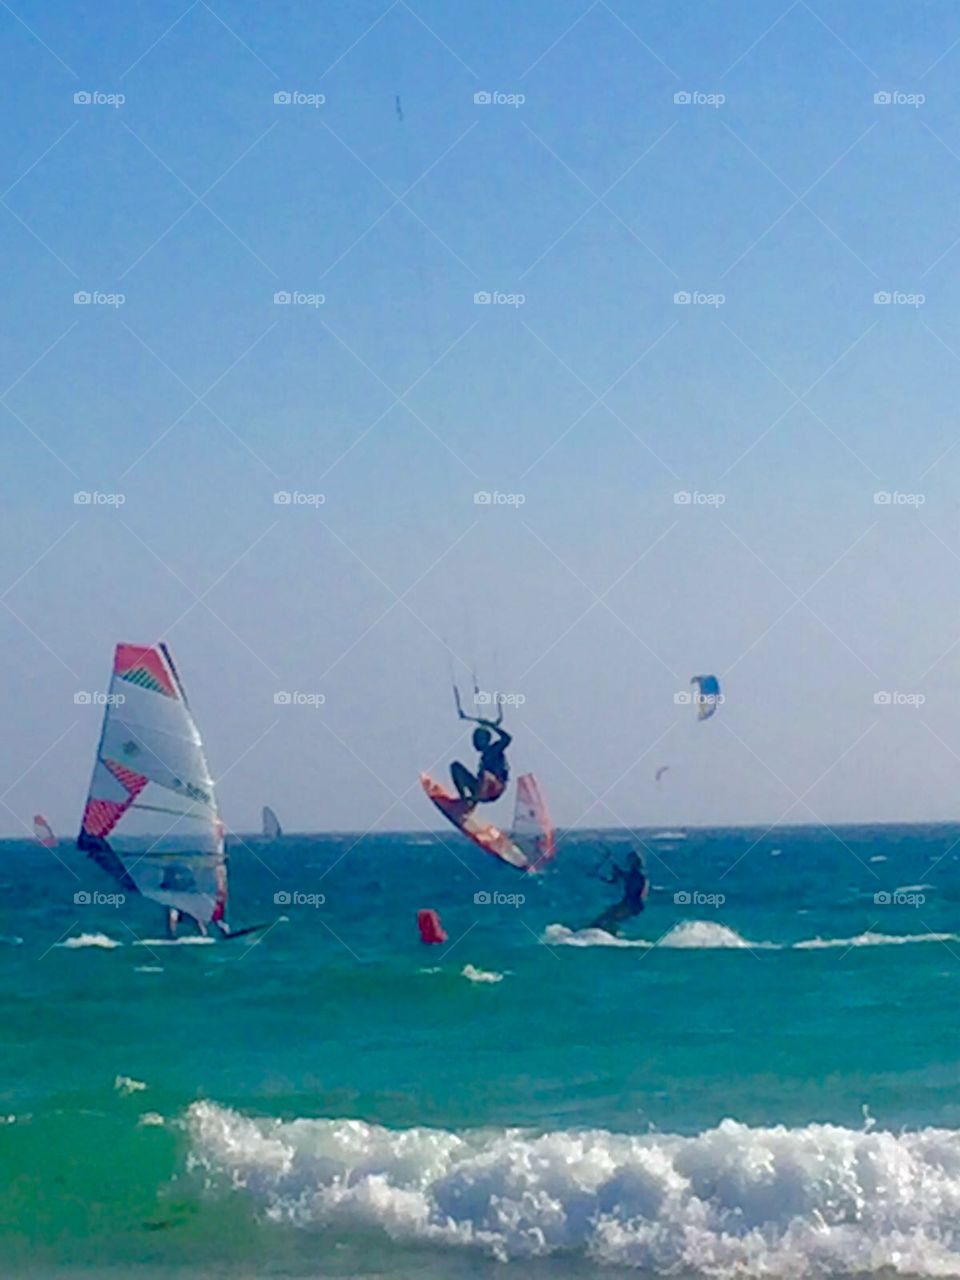 Kitesurfing jump